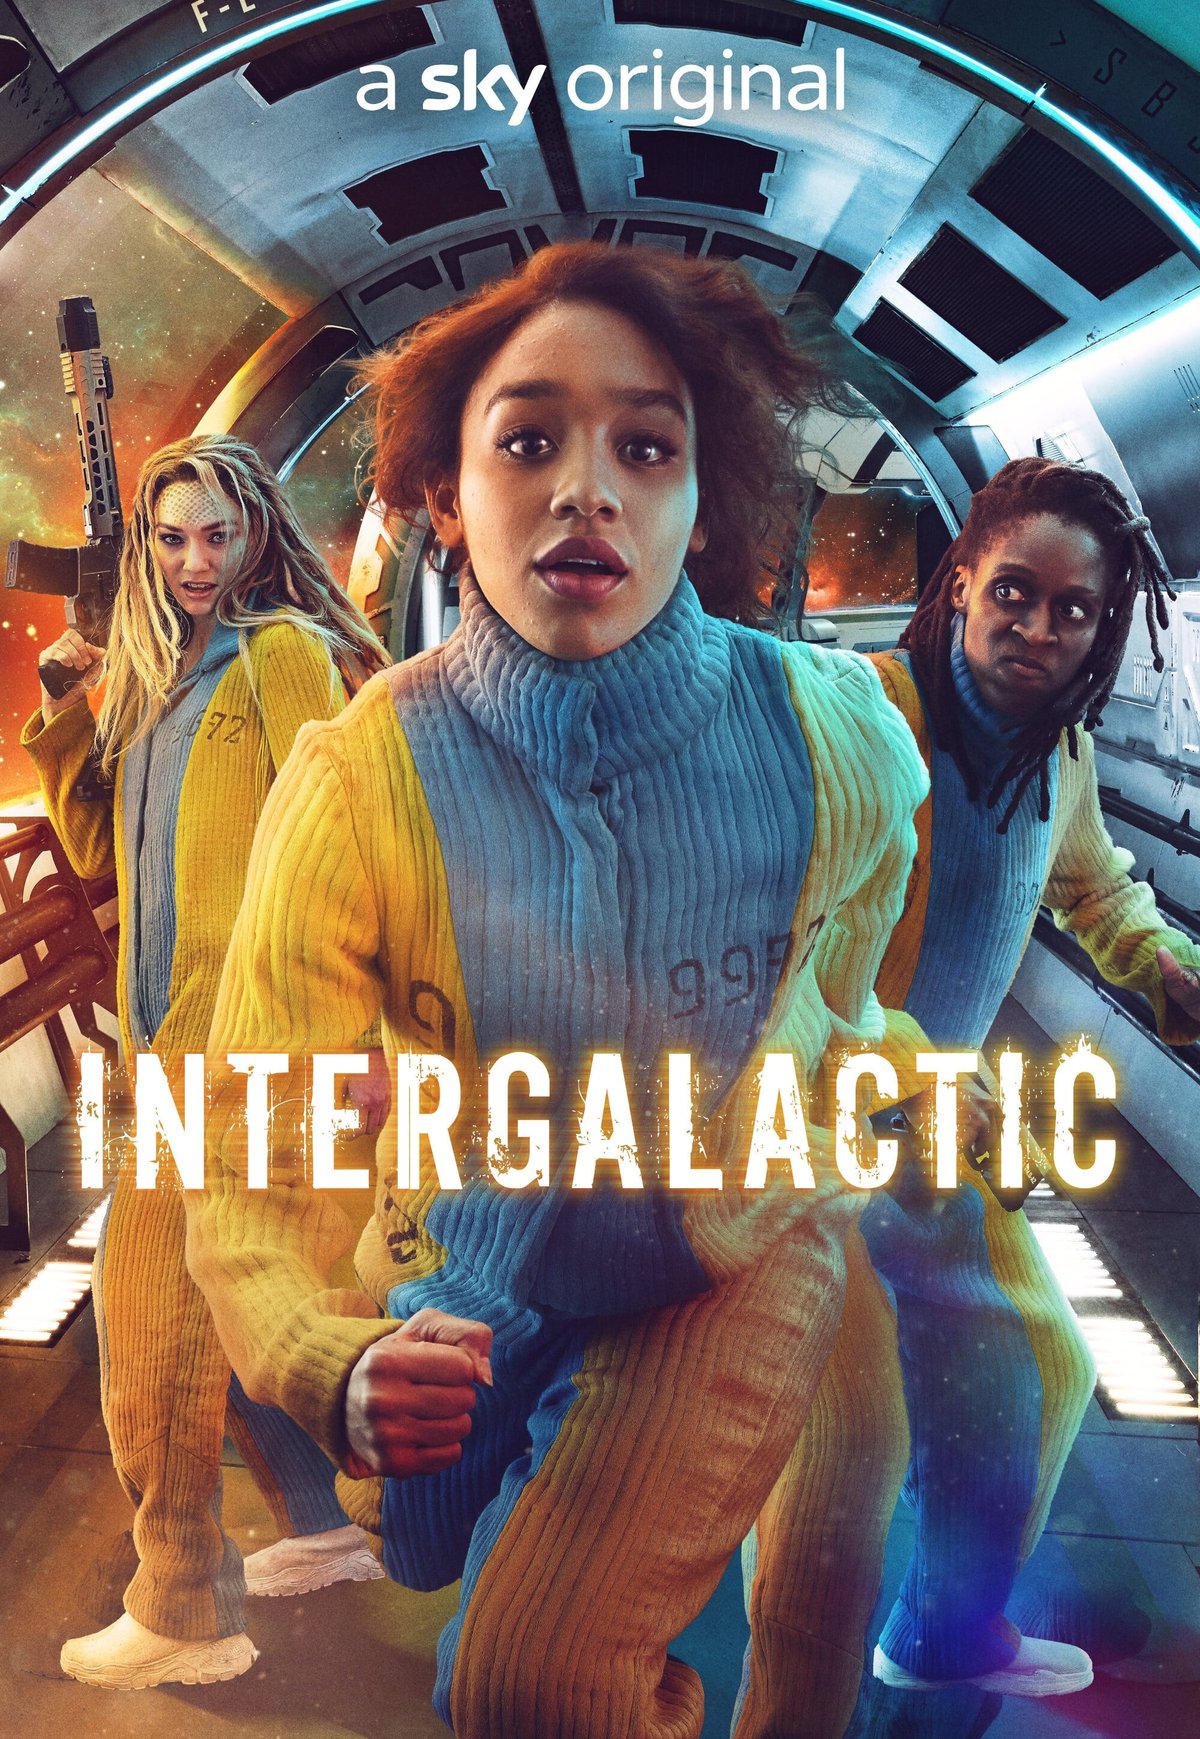 Intergalactic | Série britânica de ficção científica espacial com Savannah Steyn no Sky One